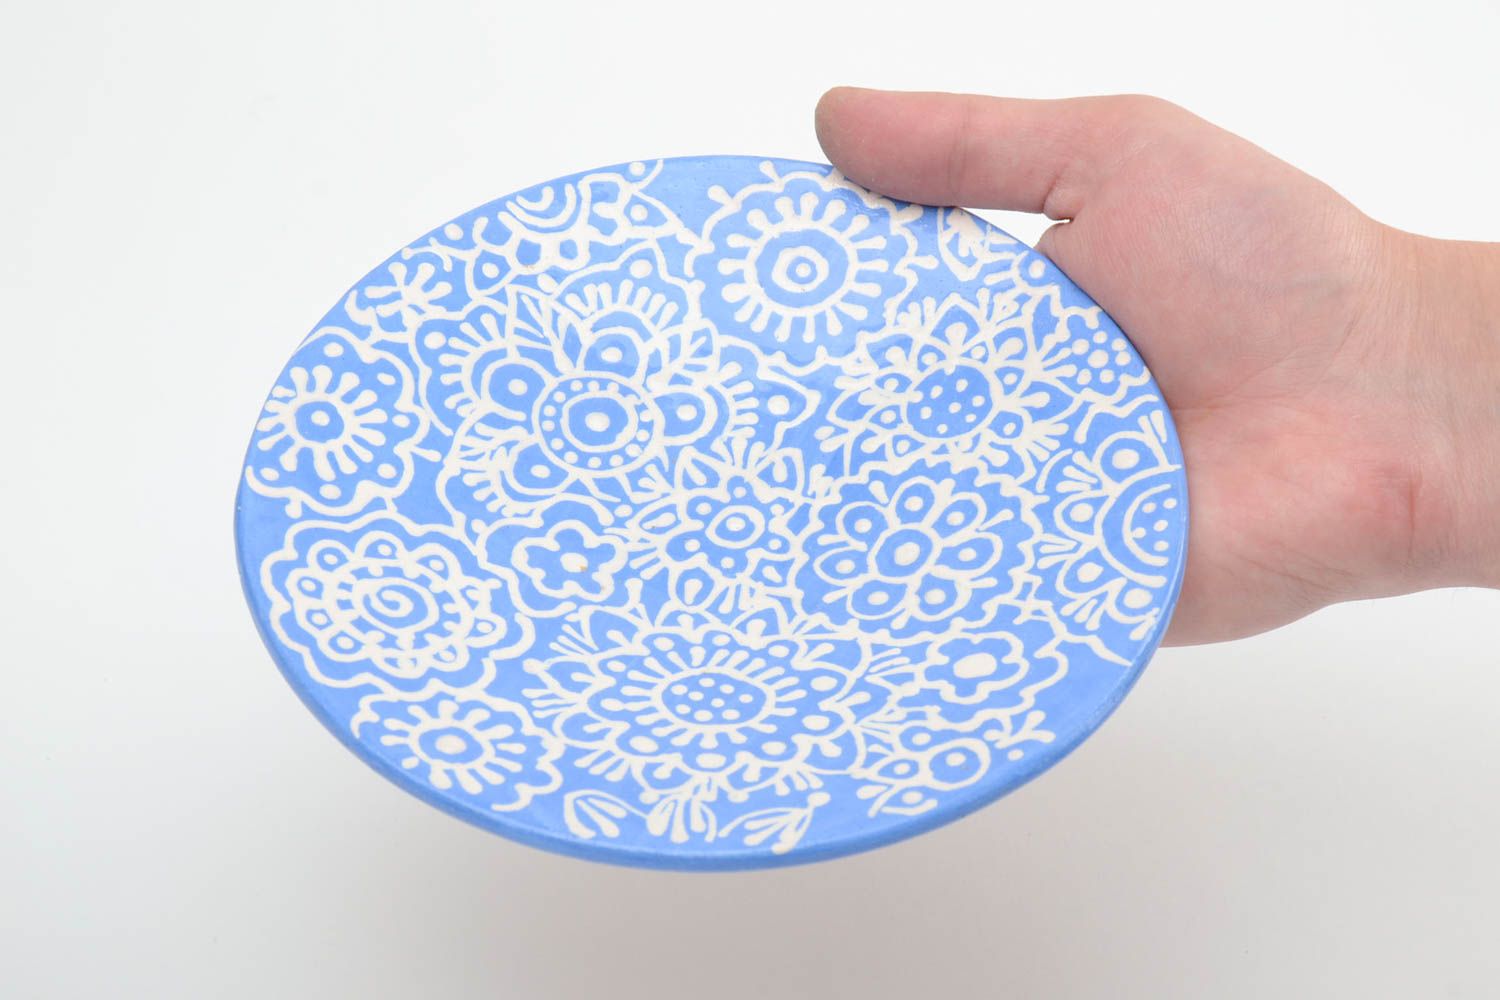 Handmade Keramik Untertasse mit Muster in Blau und Weiß klein schön glasiert für Teeparty foto 5